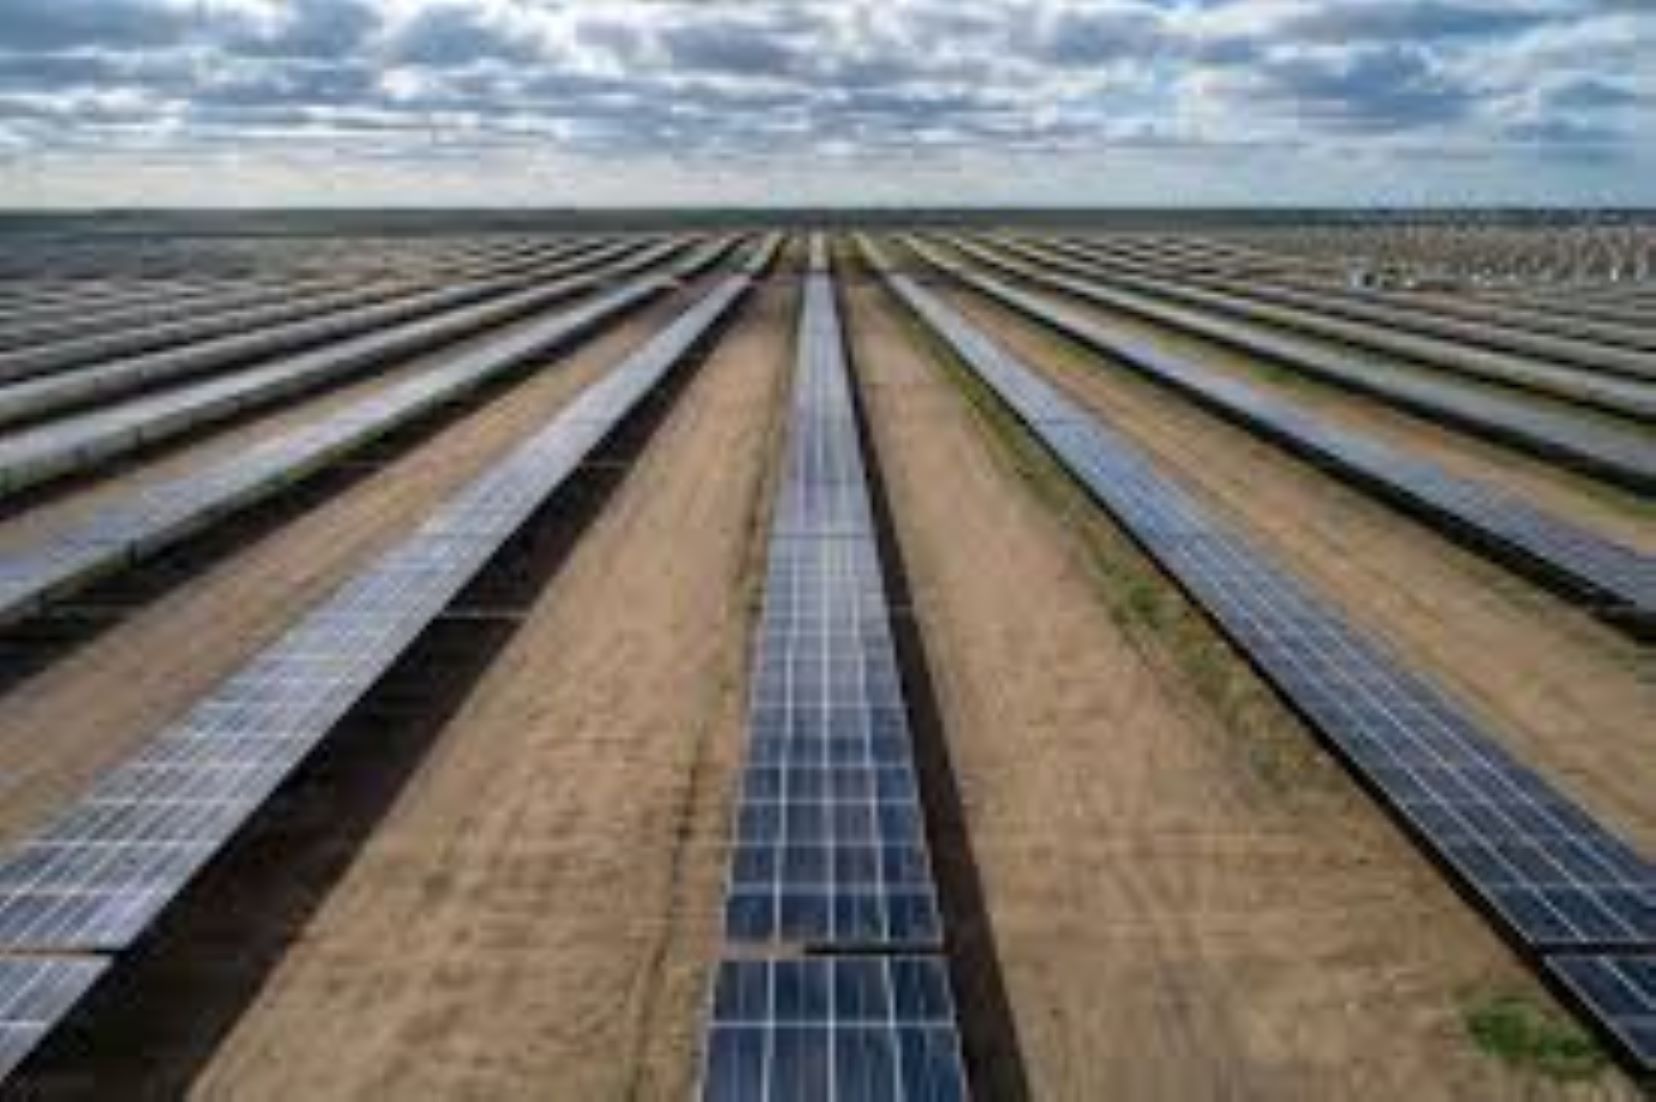 Australian Energy Minister Announces Largest Renewable Project Tender